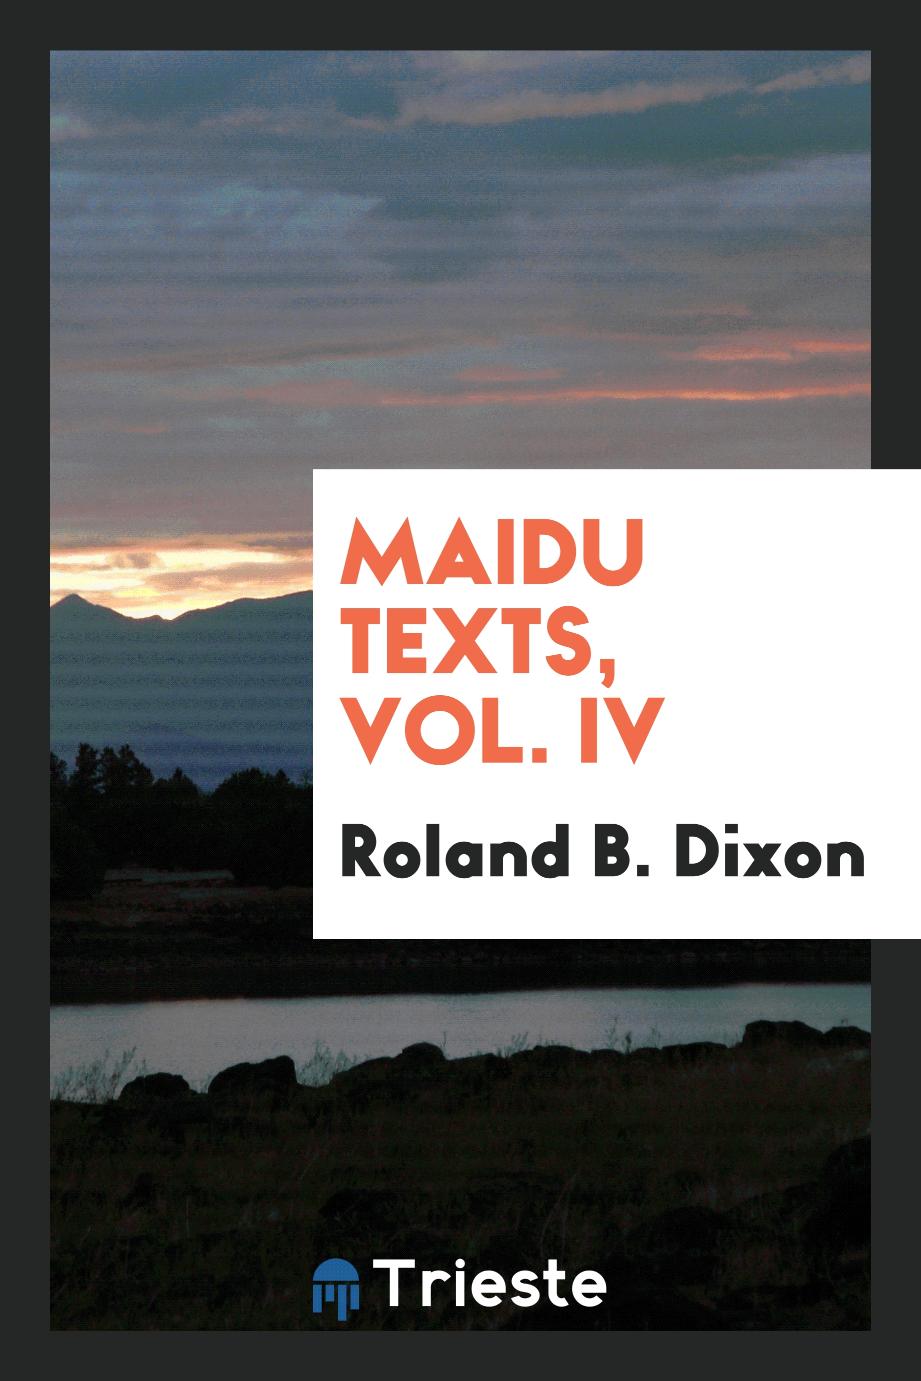 Maidu texts, Vol. IV